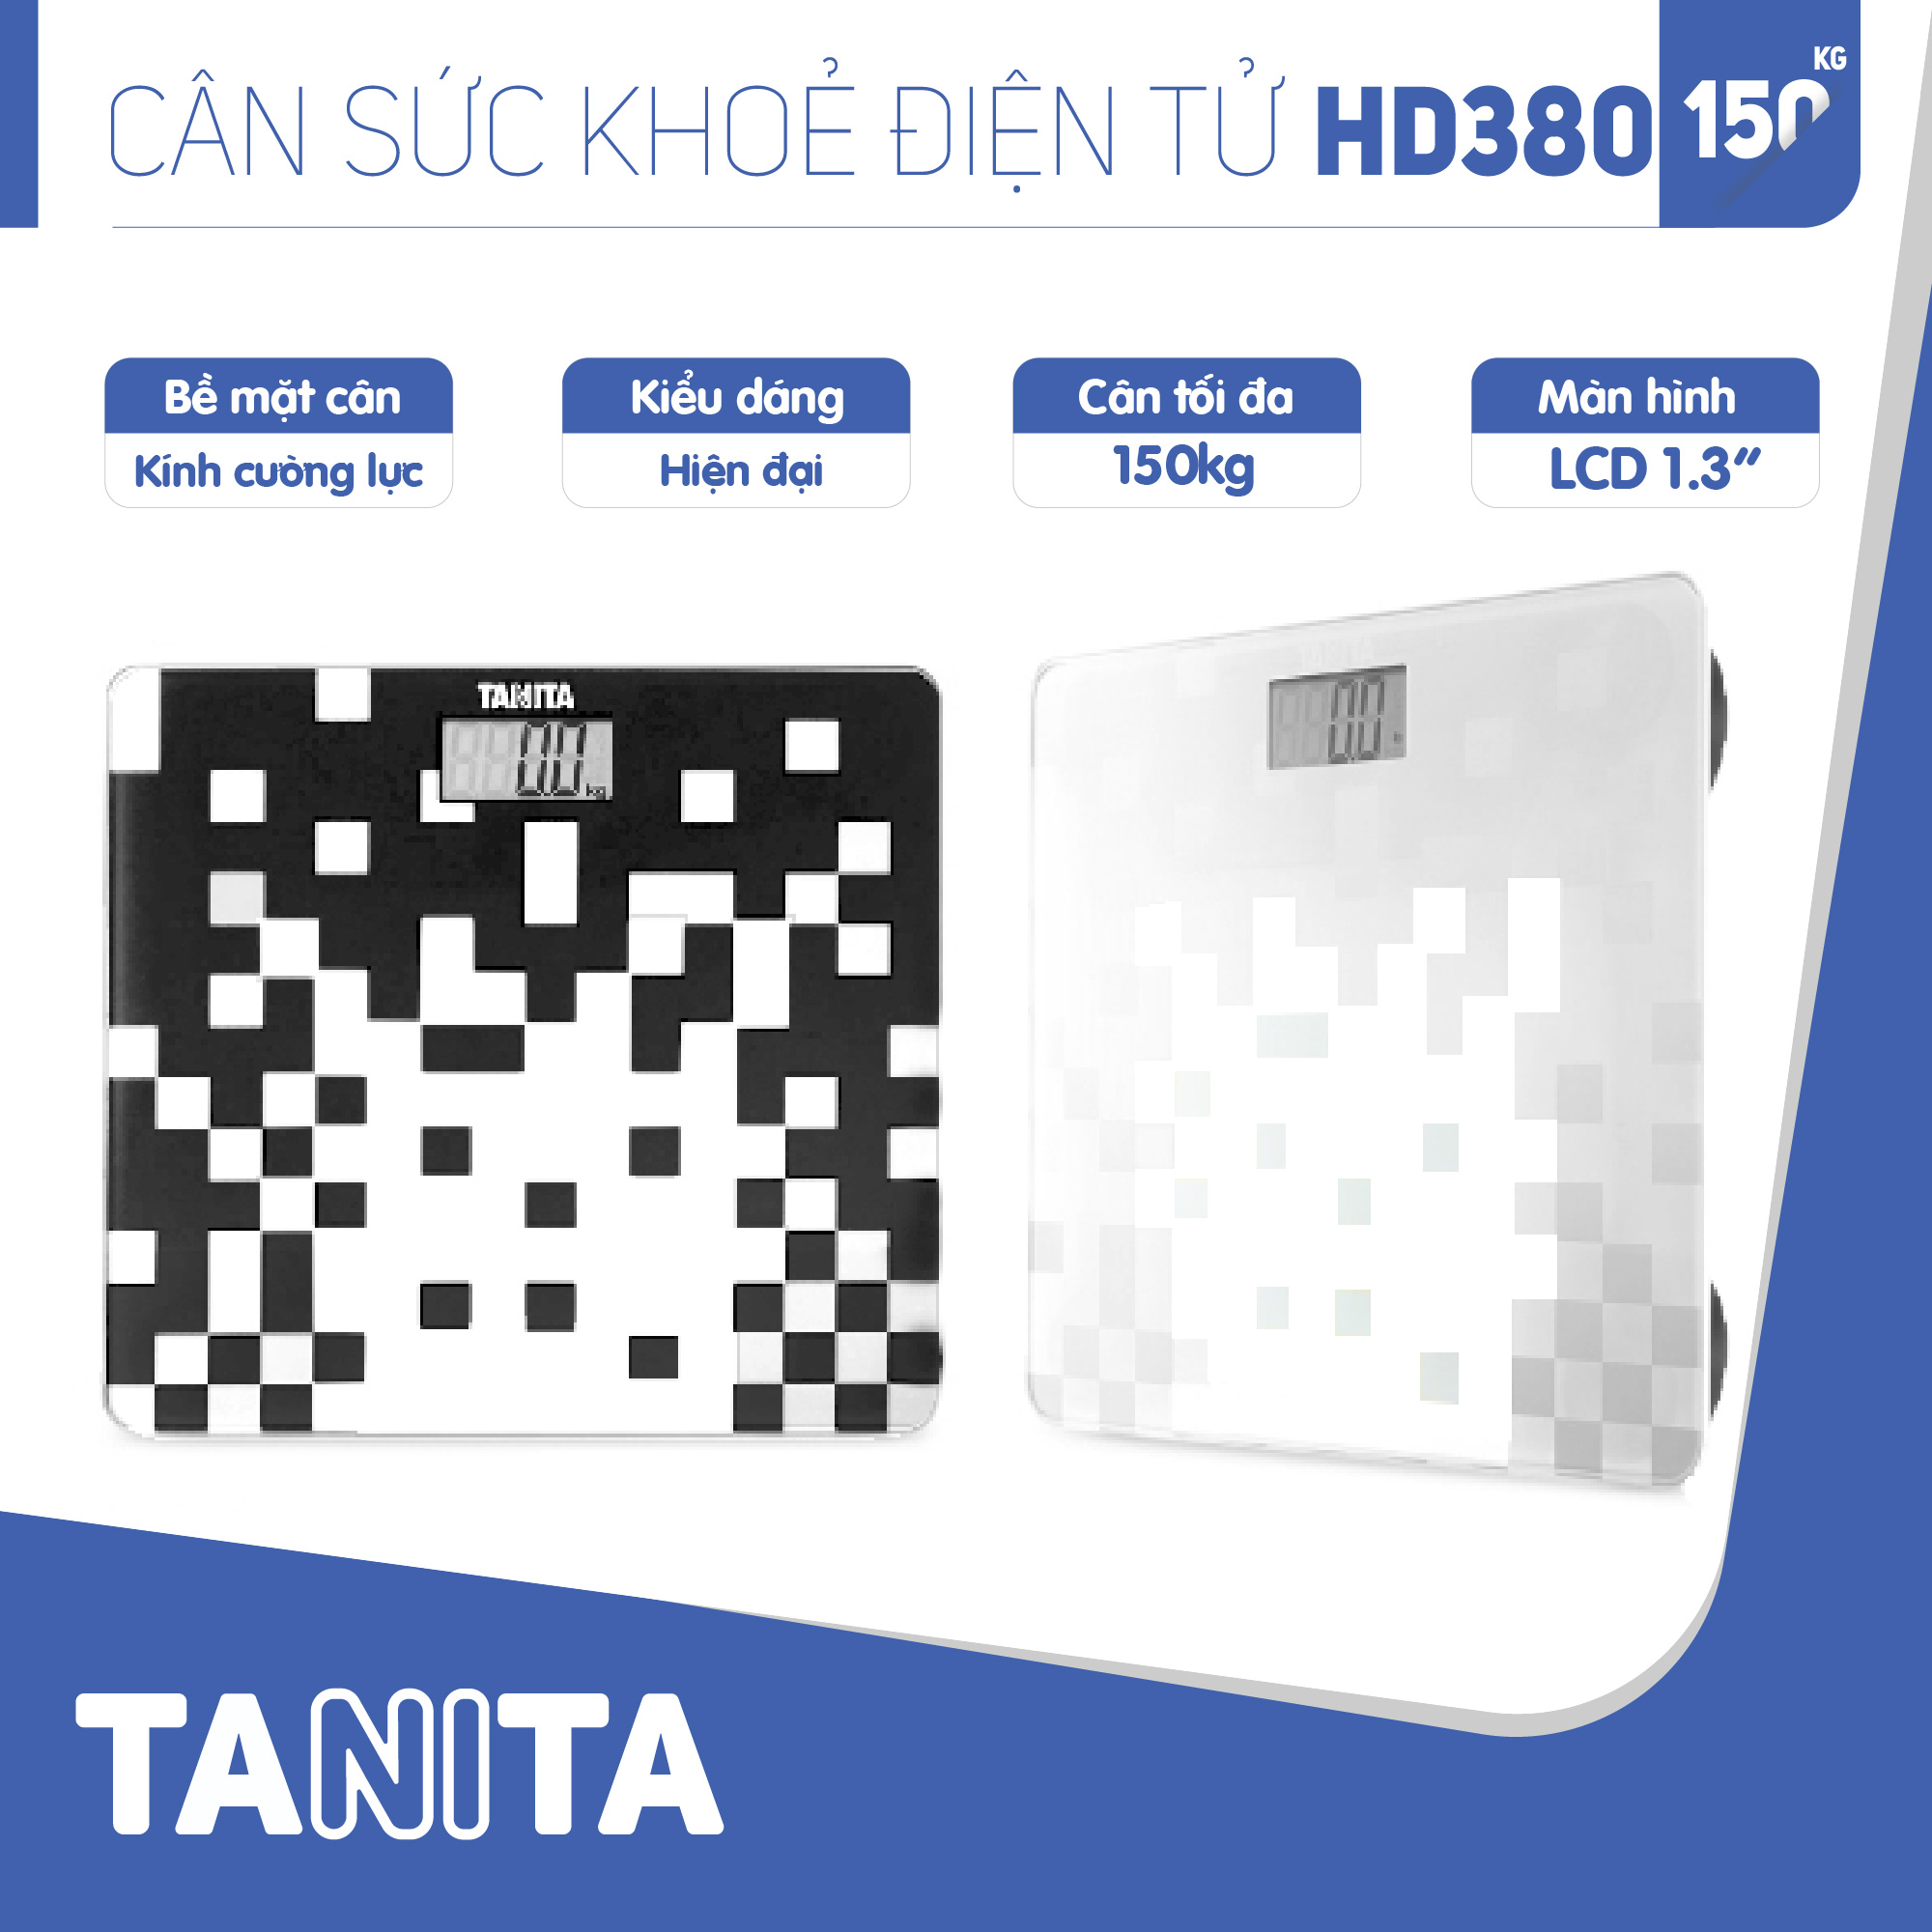 Cân sức khoẻ điện tử Tanita HD380 Nhật Bản, Cân tanita, chính hãng nhật bản,cân điện tử,cân chính hãng,cân nhật bản,cân sức khoẻ y tế,cân sức khoẻ gia đình,cân sức khoẻ cao cấp,cân 120kg,cân 130kg,cân 150kg,Cân sức khoẻ mini